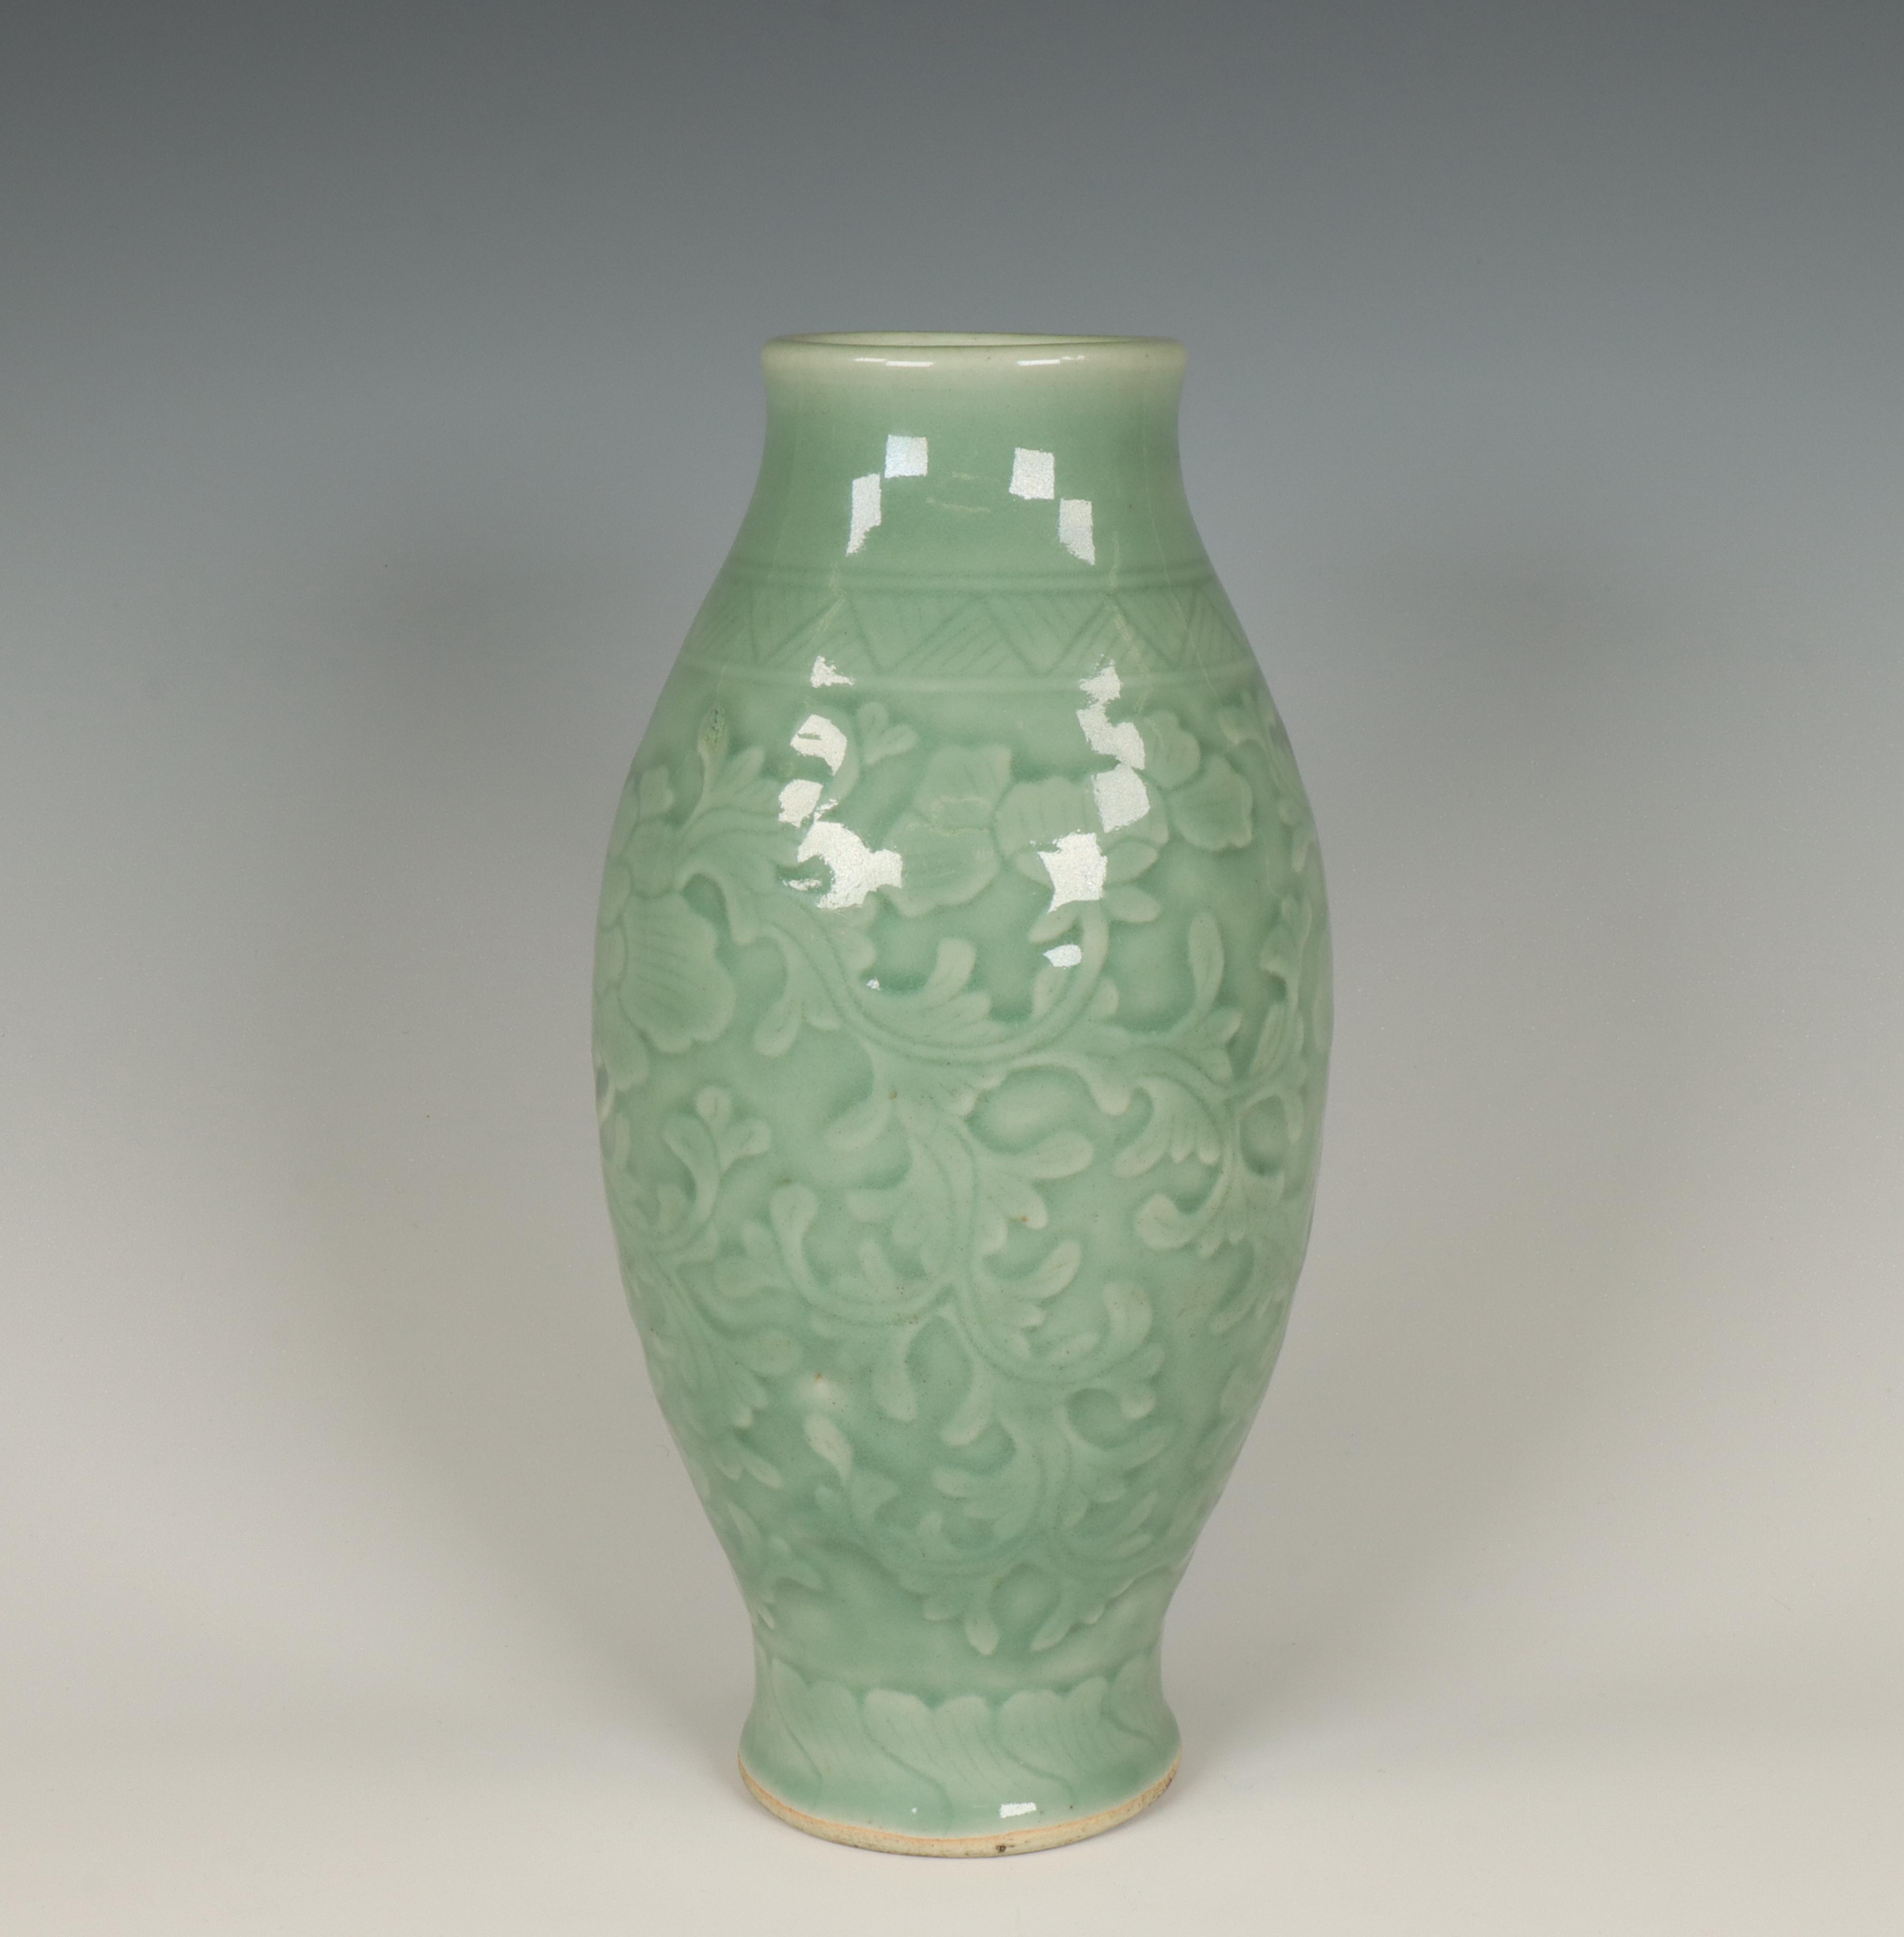 China, celadon-glazed vase, 20th century,